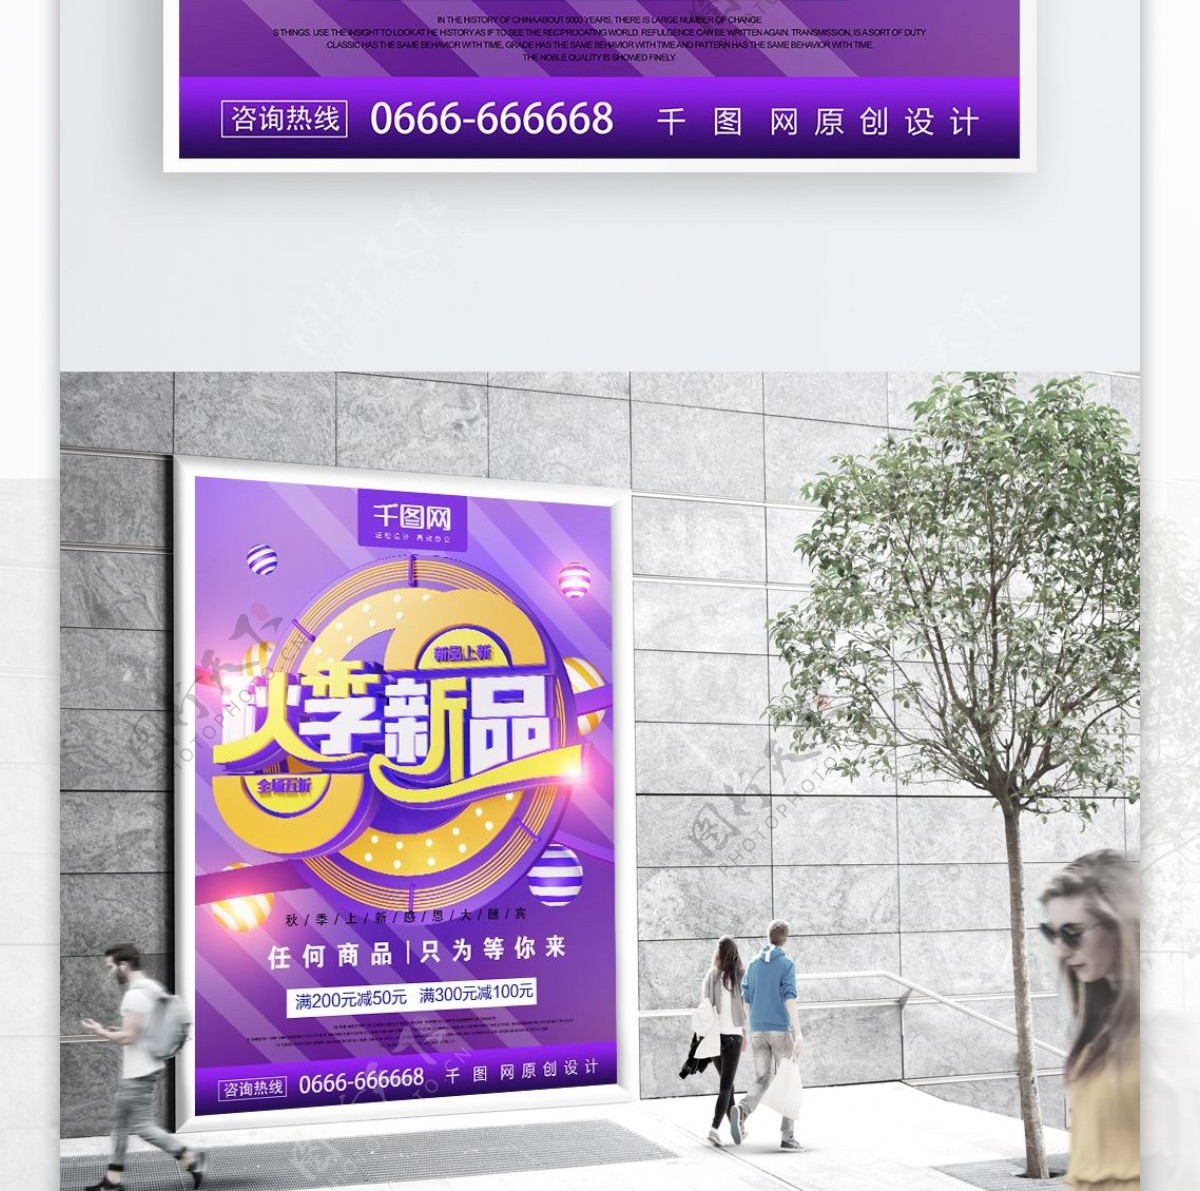 紫色秋季新品上市促销海报